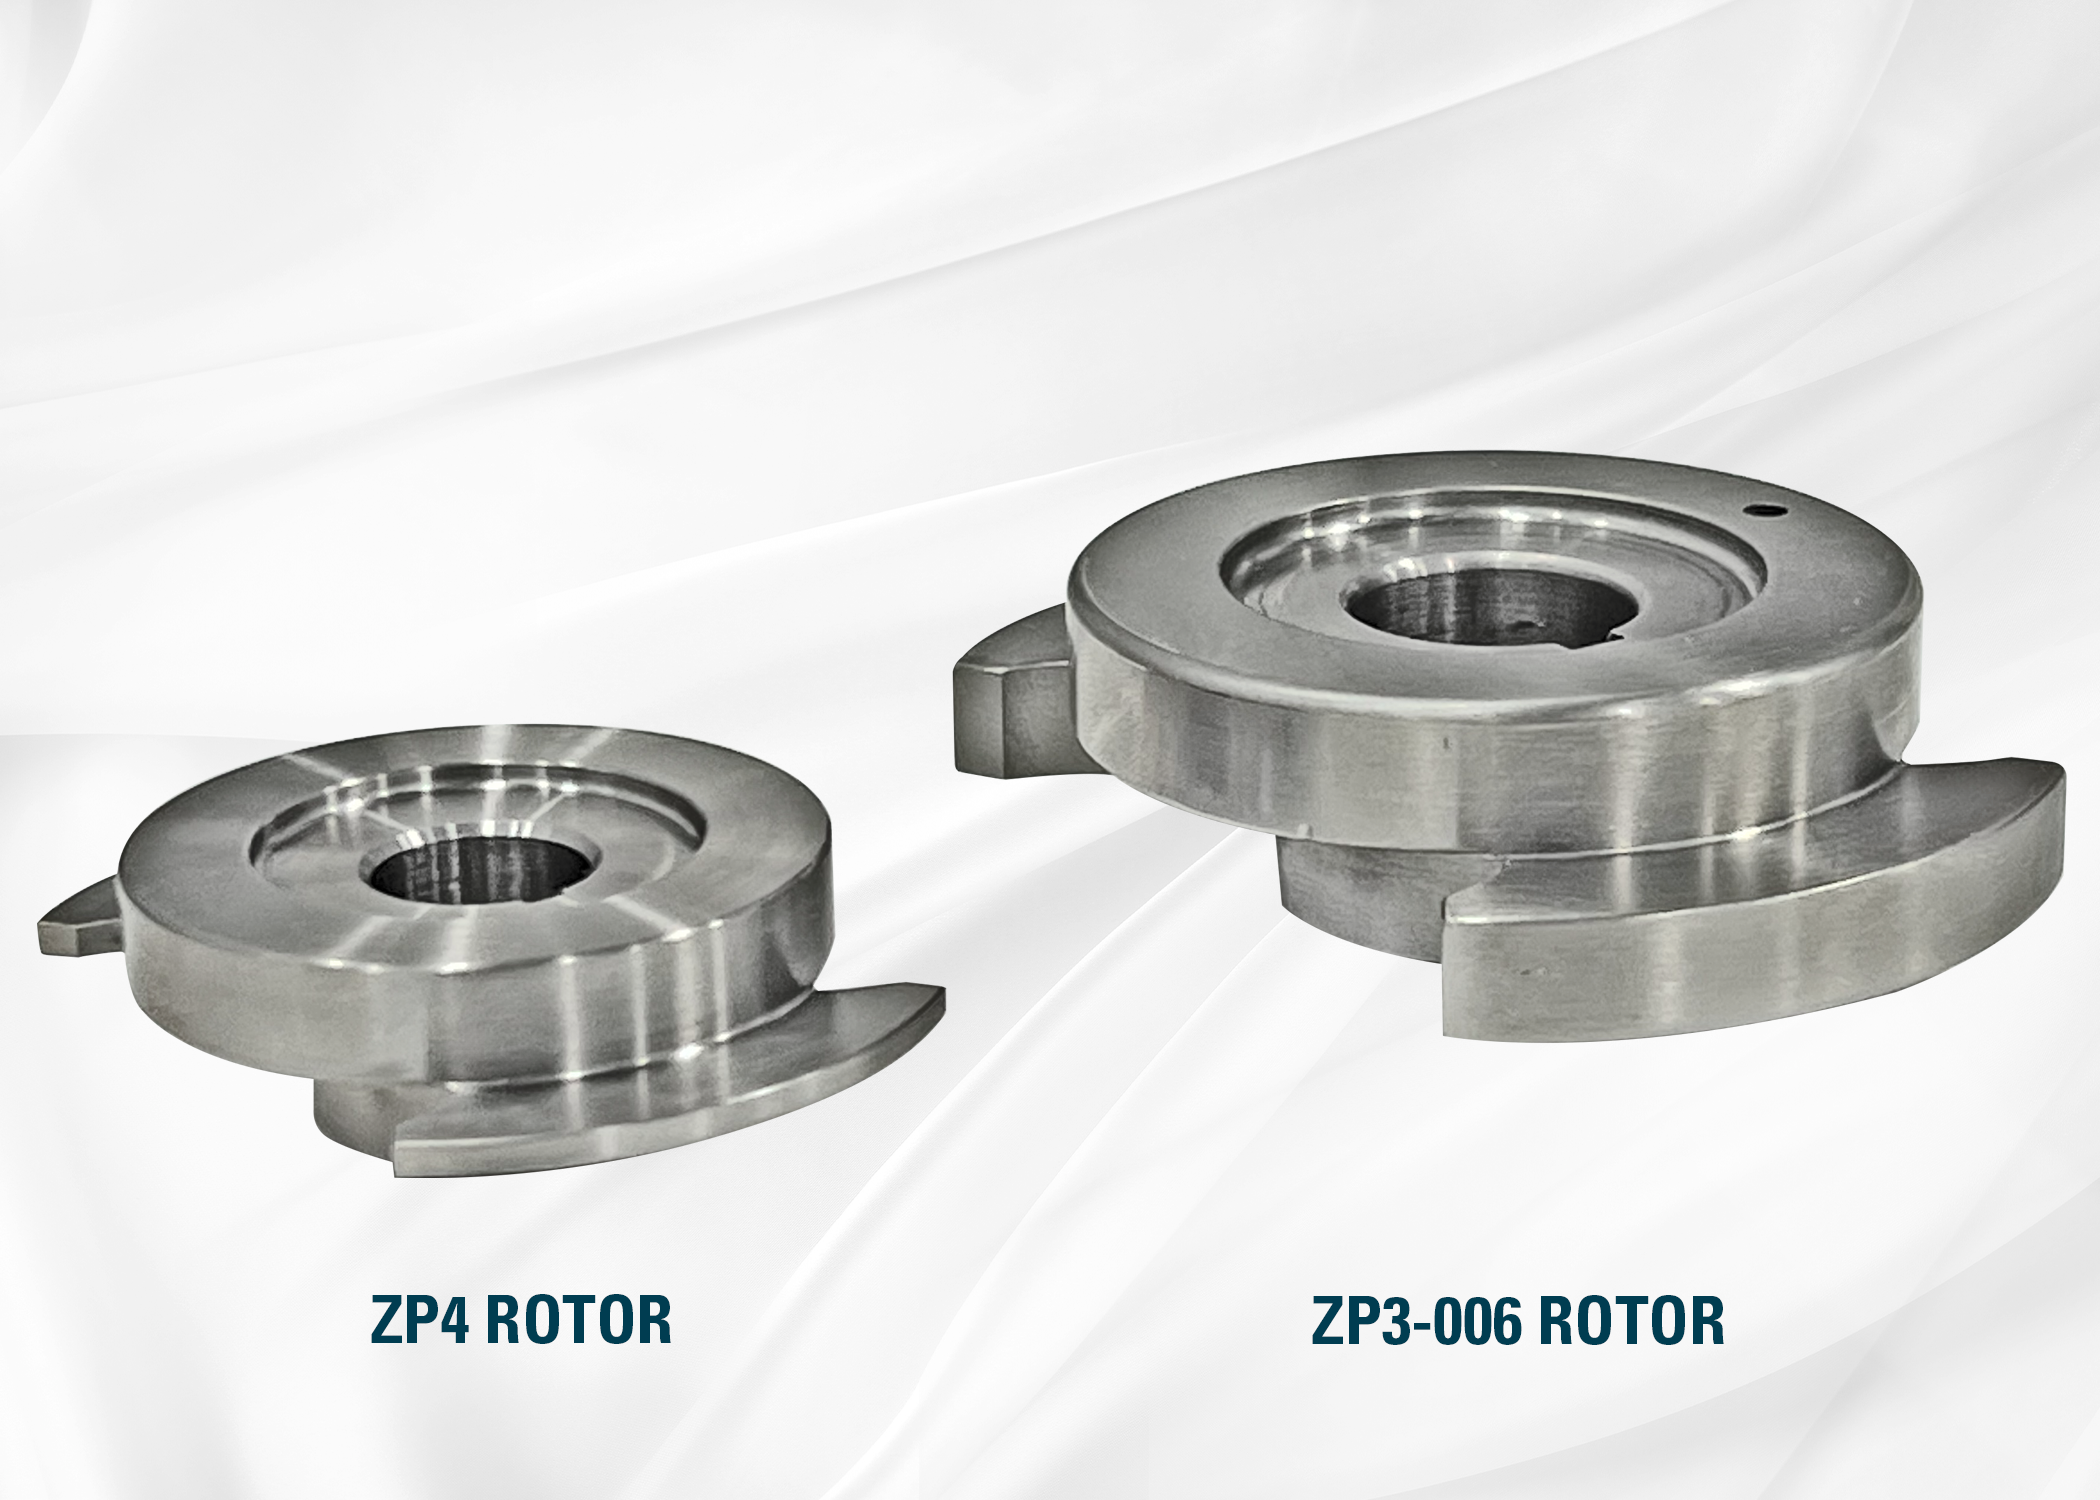 Comparación de rotores ZP4 y ZP3-006